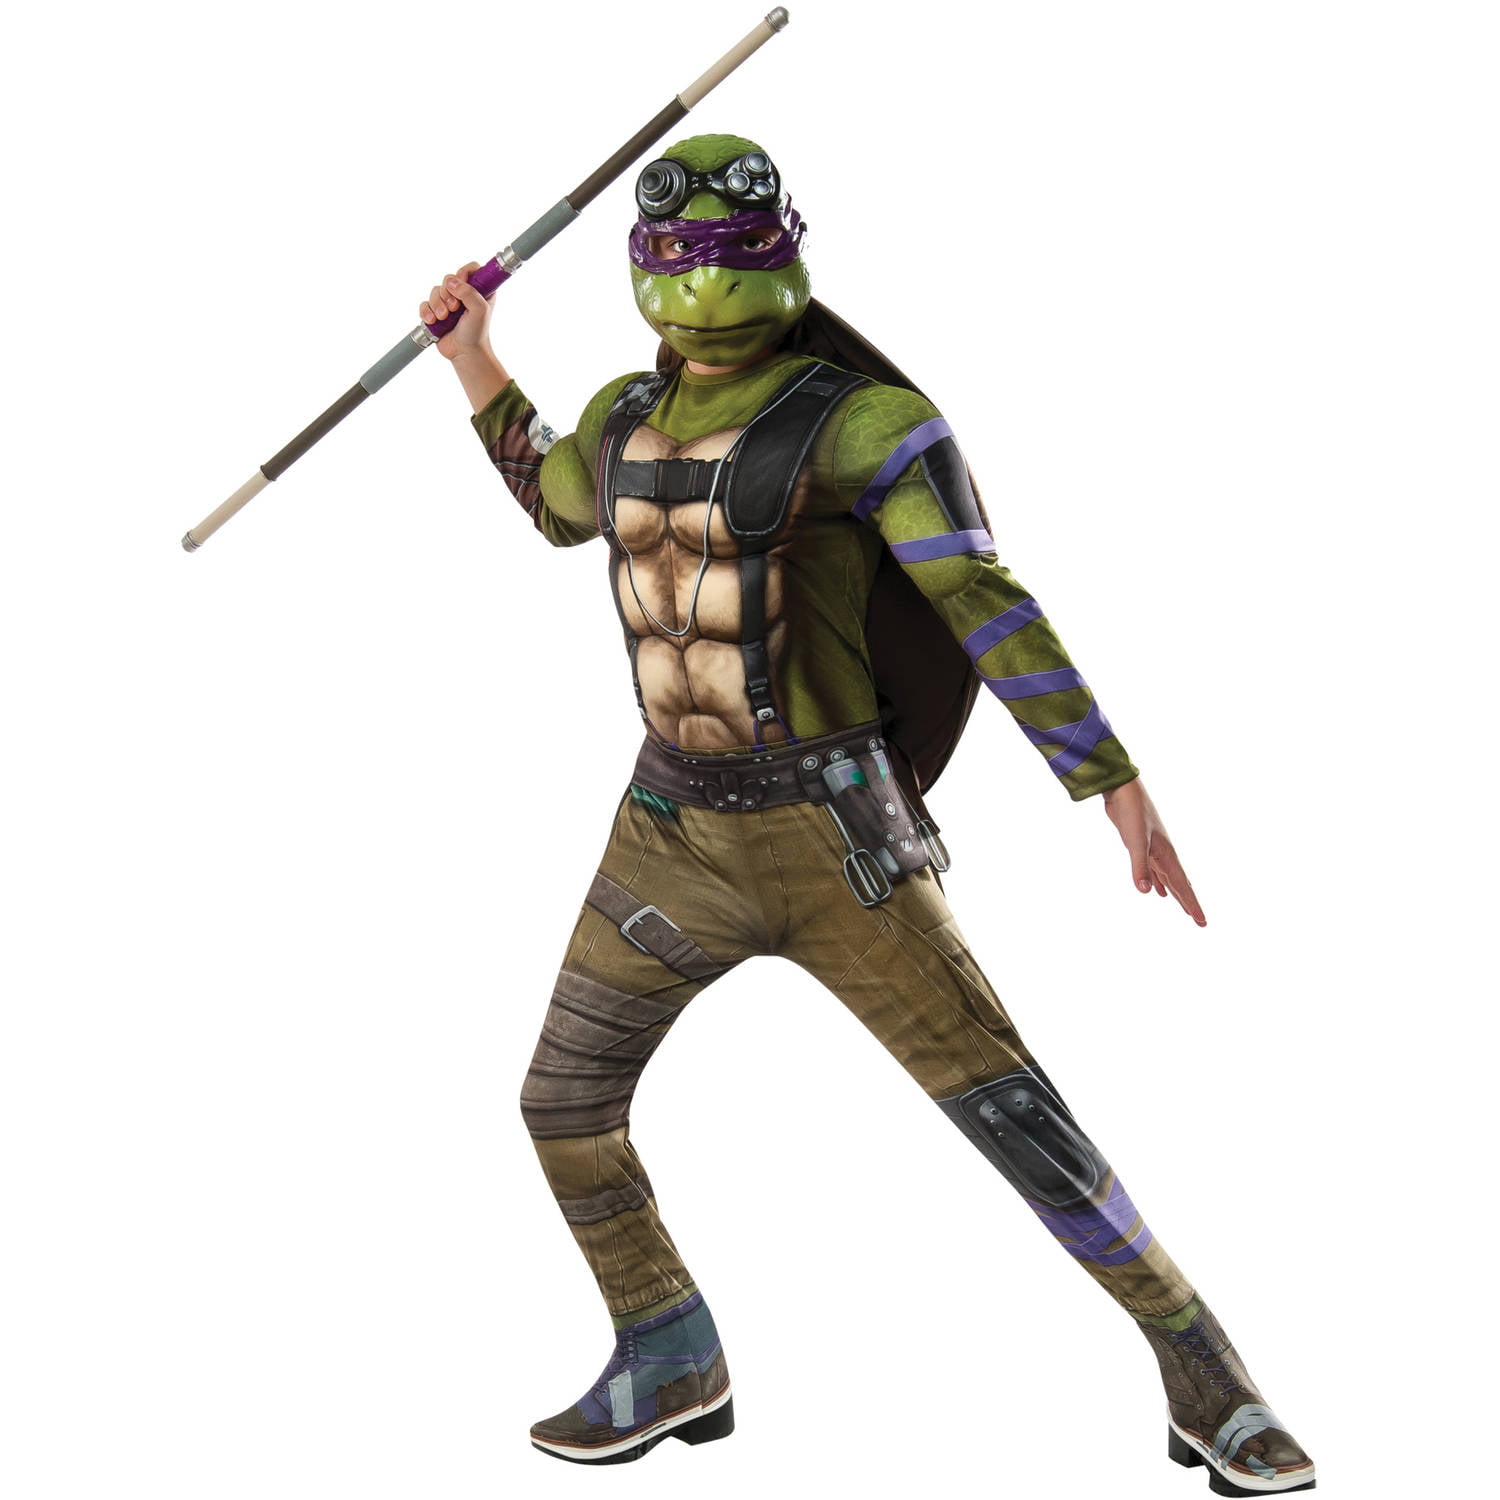 Teenage Mutant Ninja Turtles Donatello Movie Boys' Costume, Large (10-12)